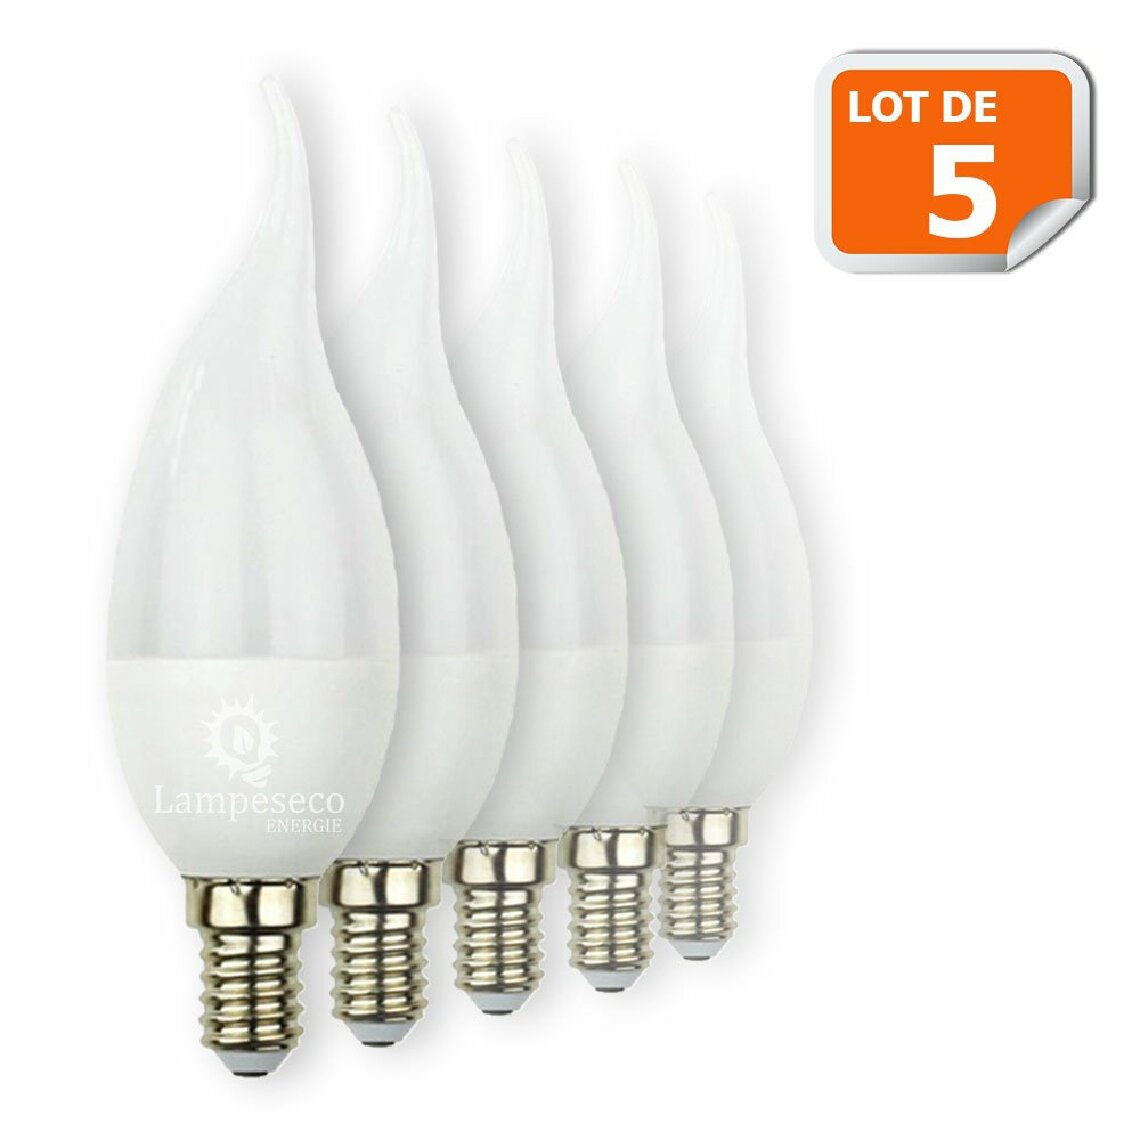 Lampesecoenergie - Lot de 5 Ampoules Led Flamme 5W Super Puissante culot à vis E14 - Ampoules LED